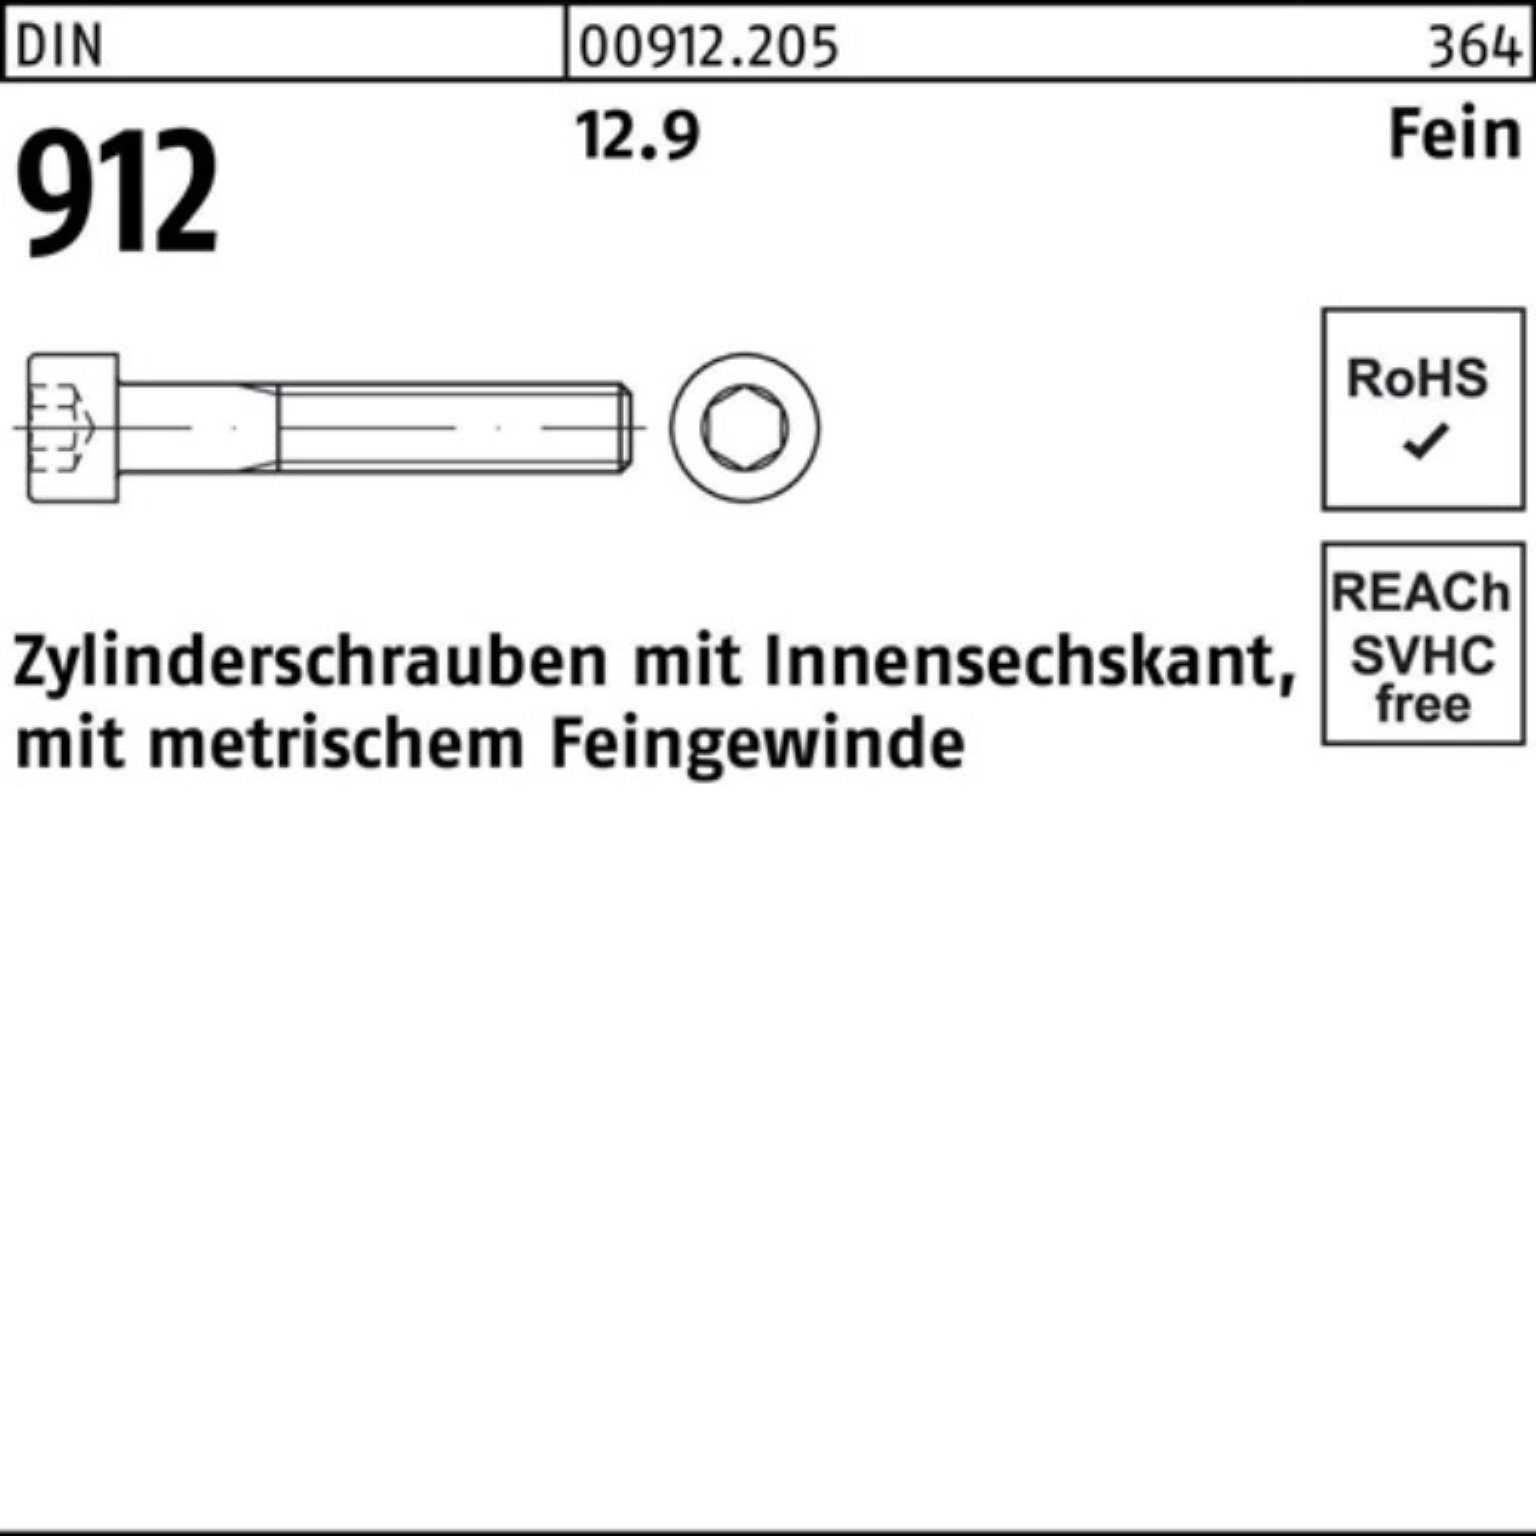 Innen-6kt Zylinderschraube 12.9 80 Stü 912 50 DIN Pack Reyher 100er Zylinderschraube M12x1,5x